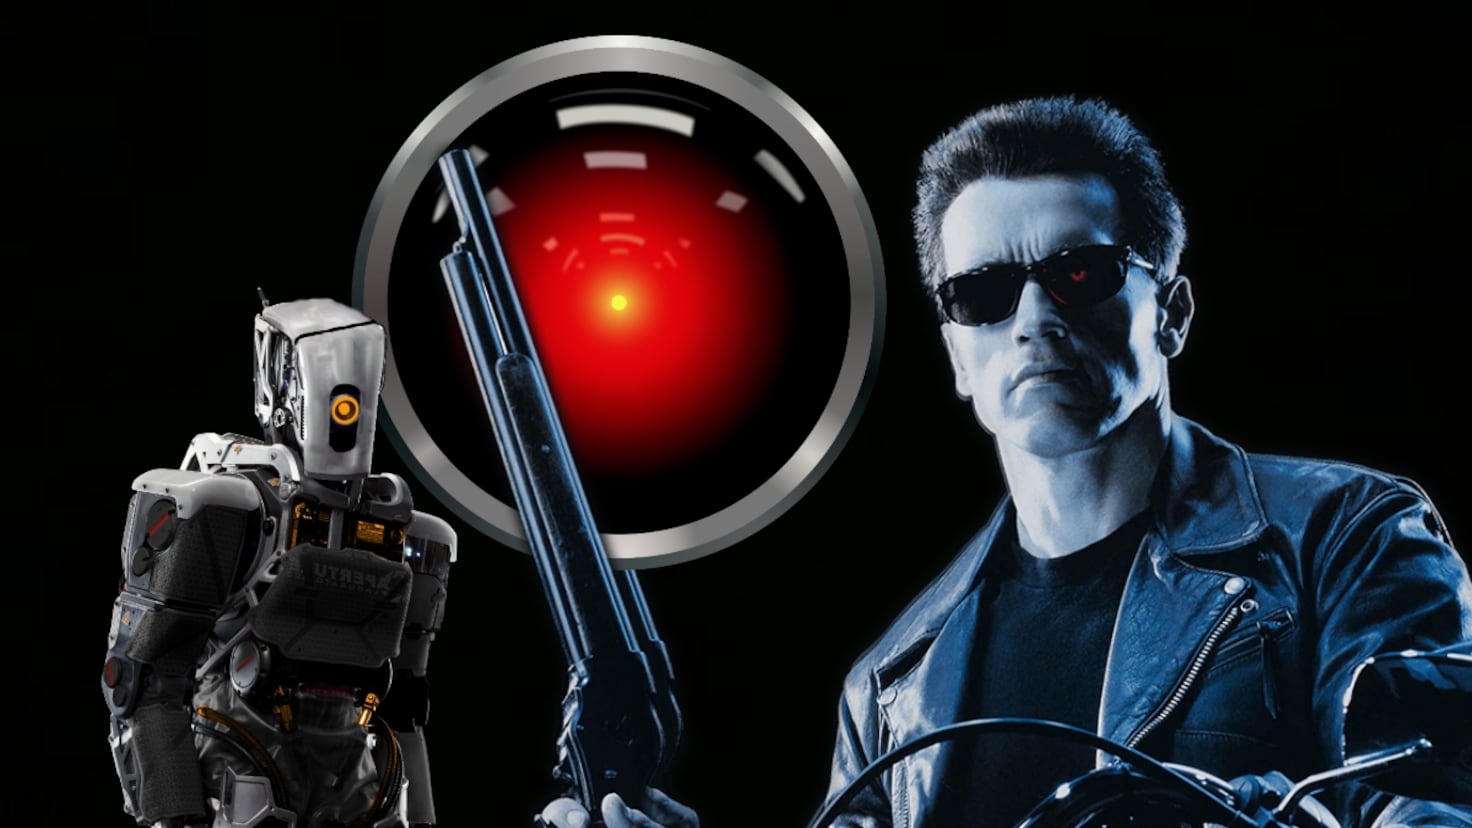 12 peliculas donde los antagonistas son robots e inteligencias artificiales